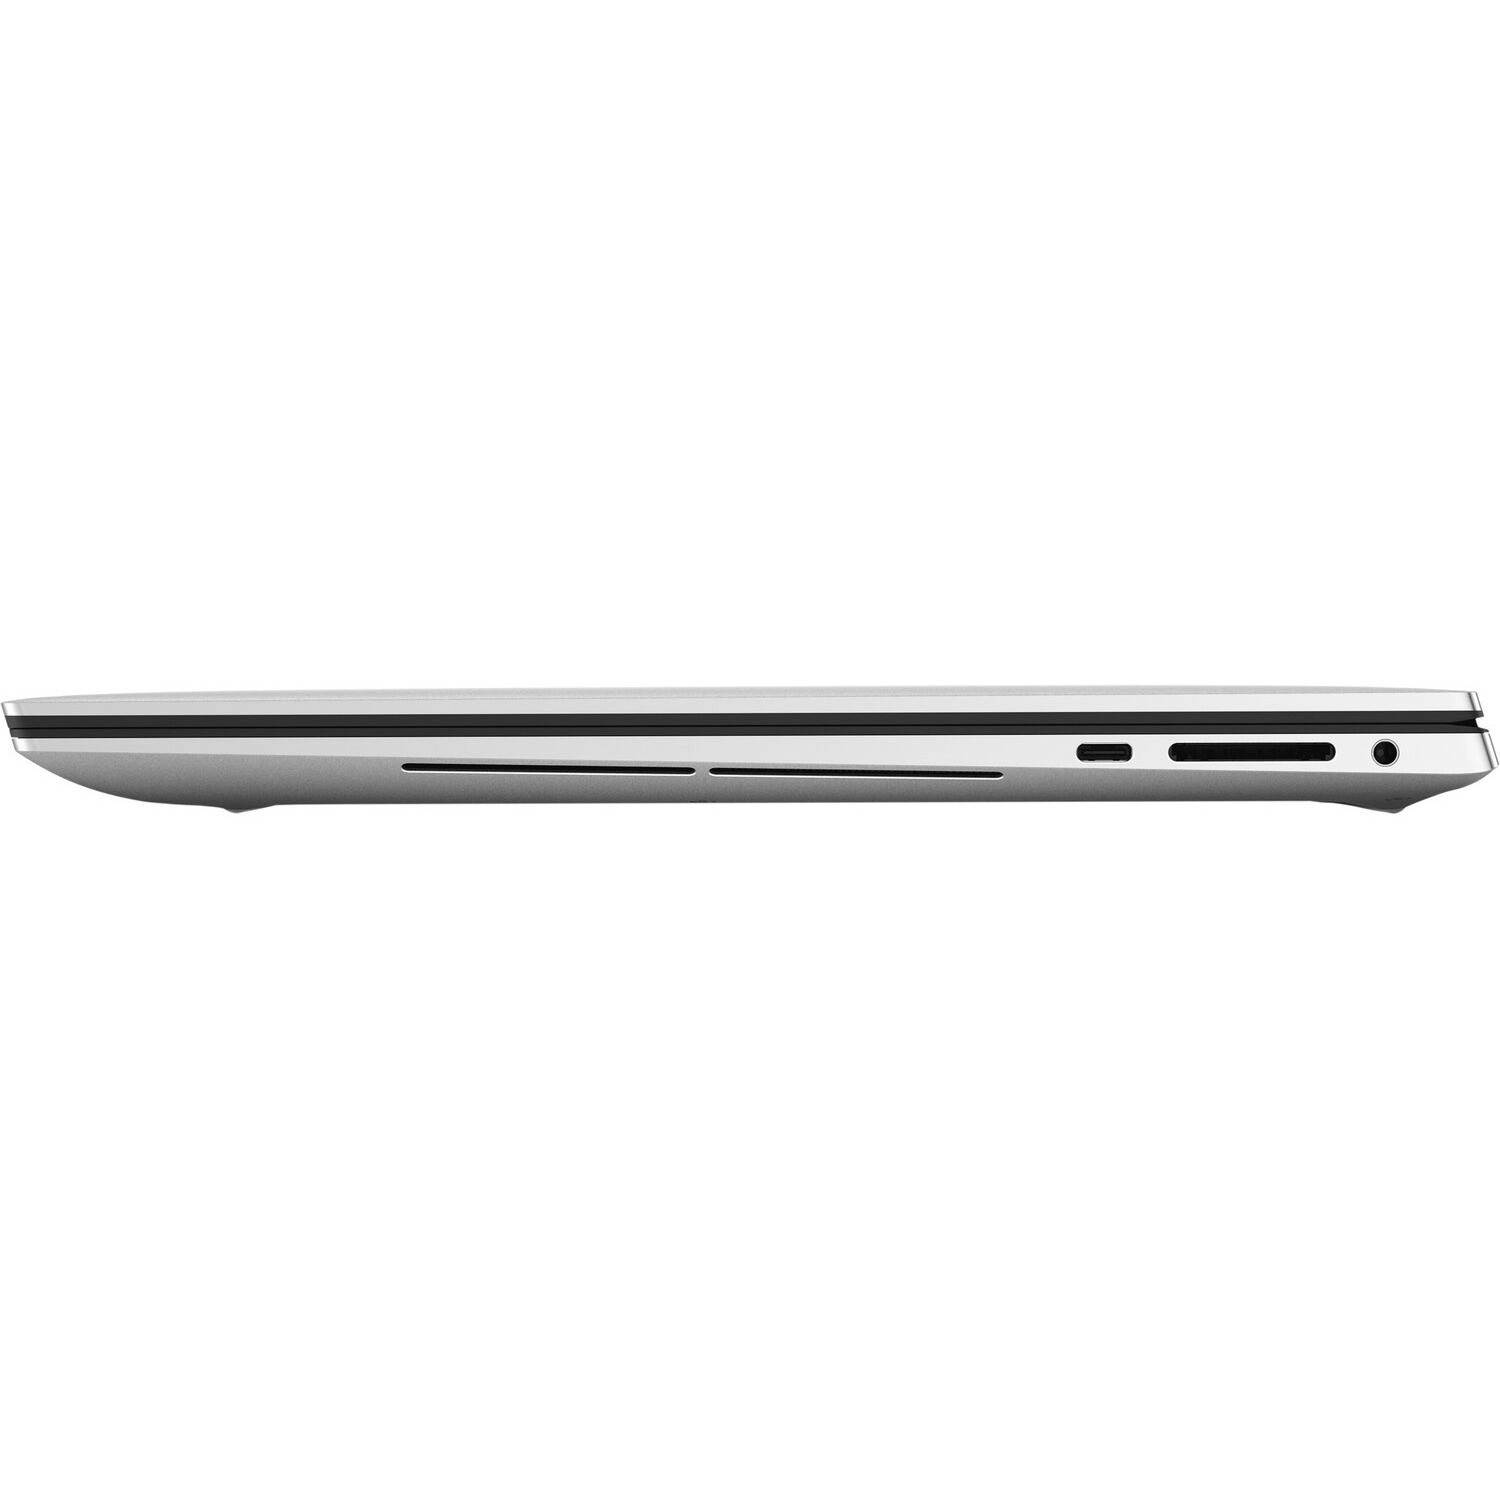 Ноутбуки Dell XPS 15 9530 [9530-0738]